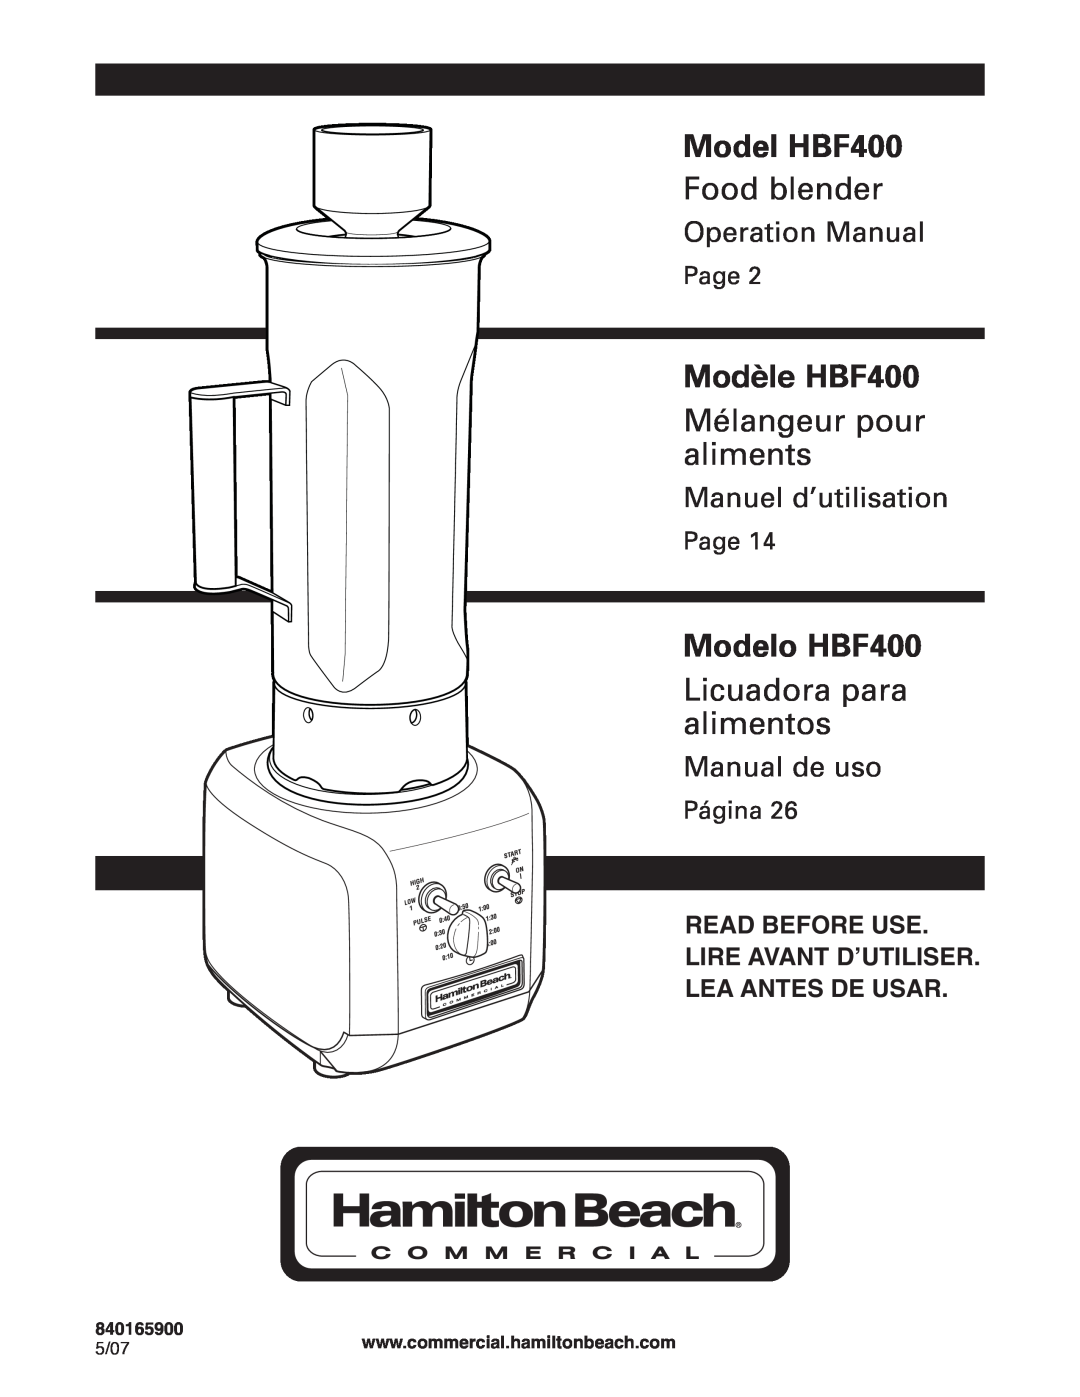 Hamilton Beach HBF400 operation manual 